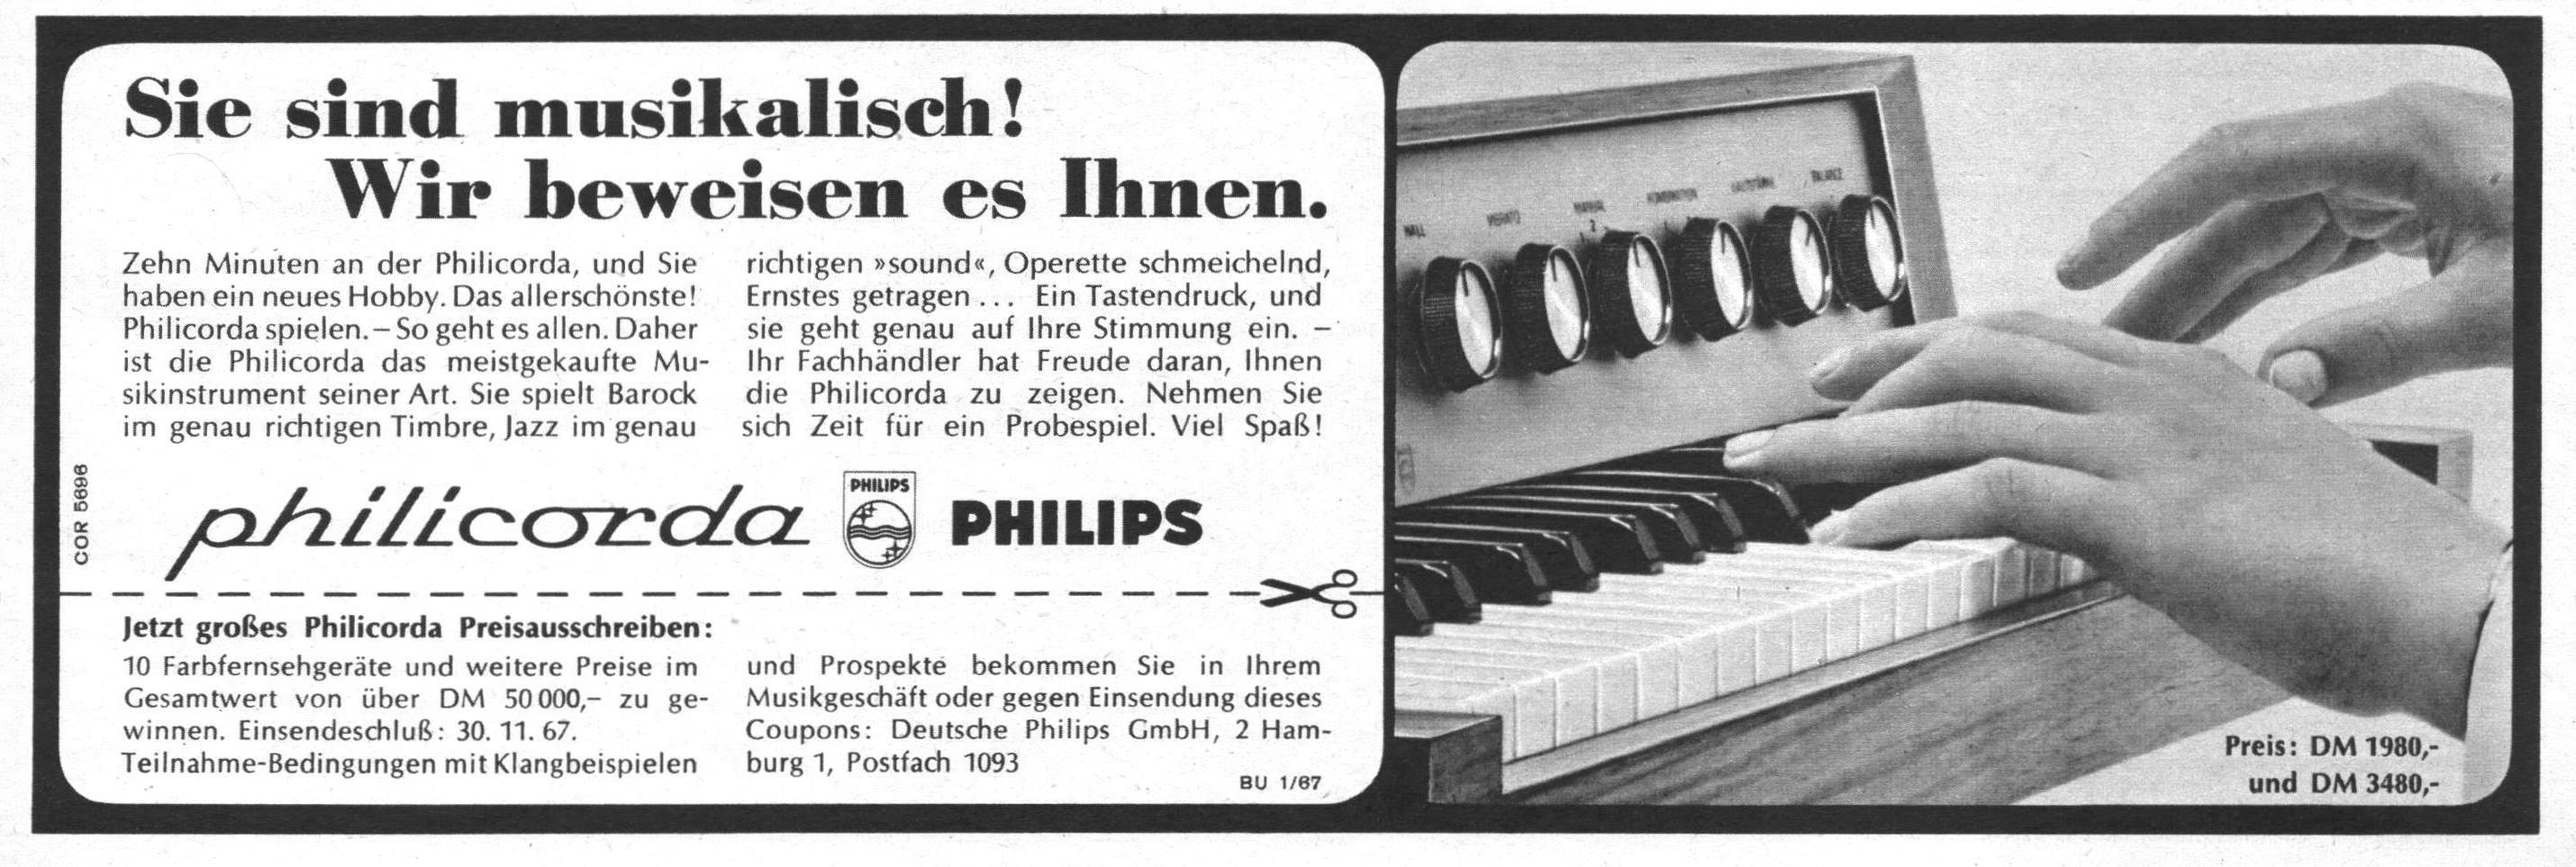 Philips 1967 0.jpg